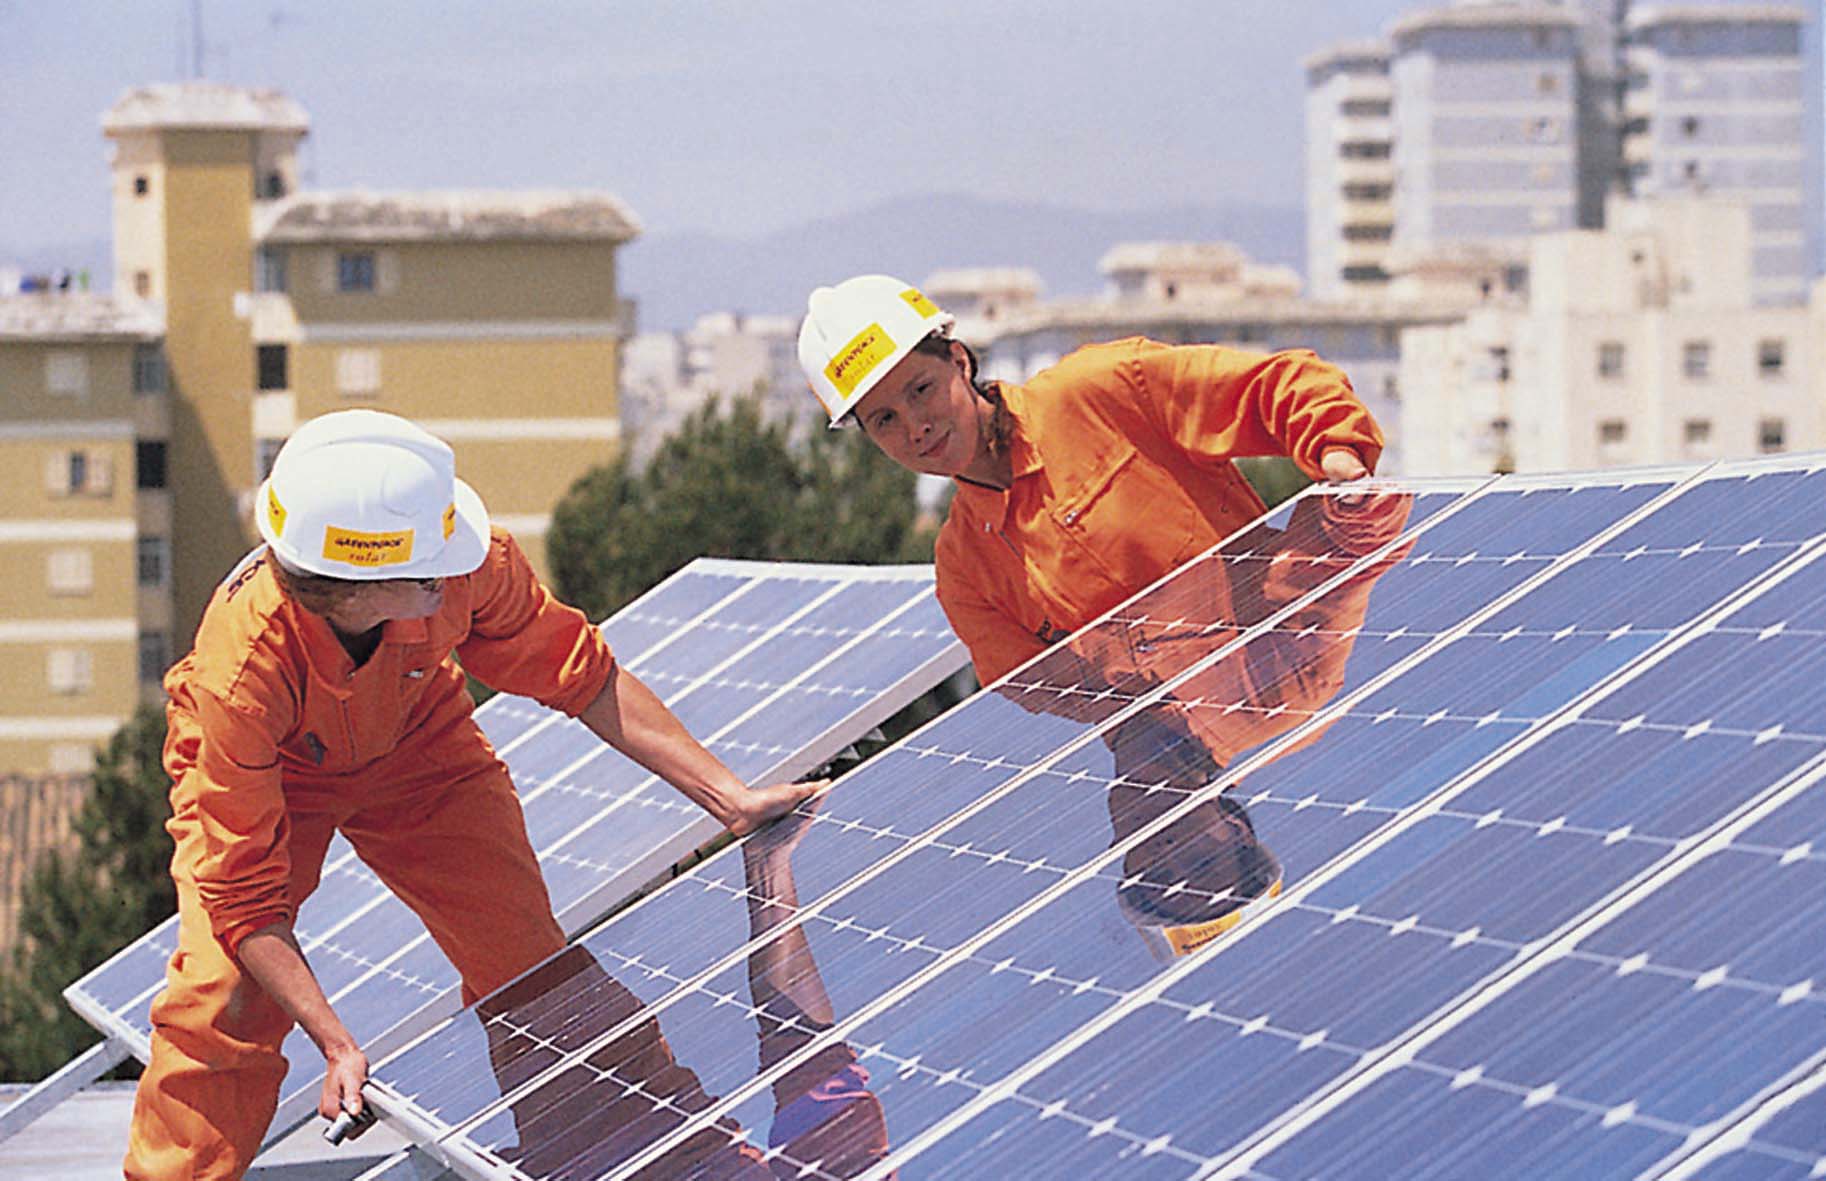 Φωτοβολταϊκά στη στέγη – Πρόταση «έκτακτης ανάγκης» από την Κομισιόν για άδειες σε ένα μήνα